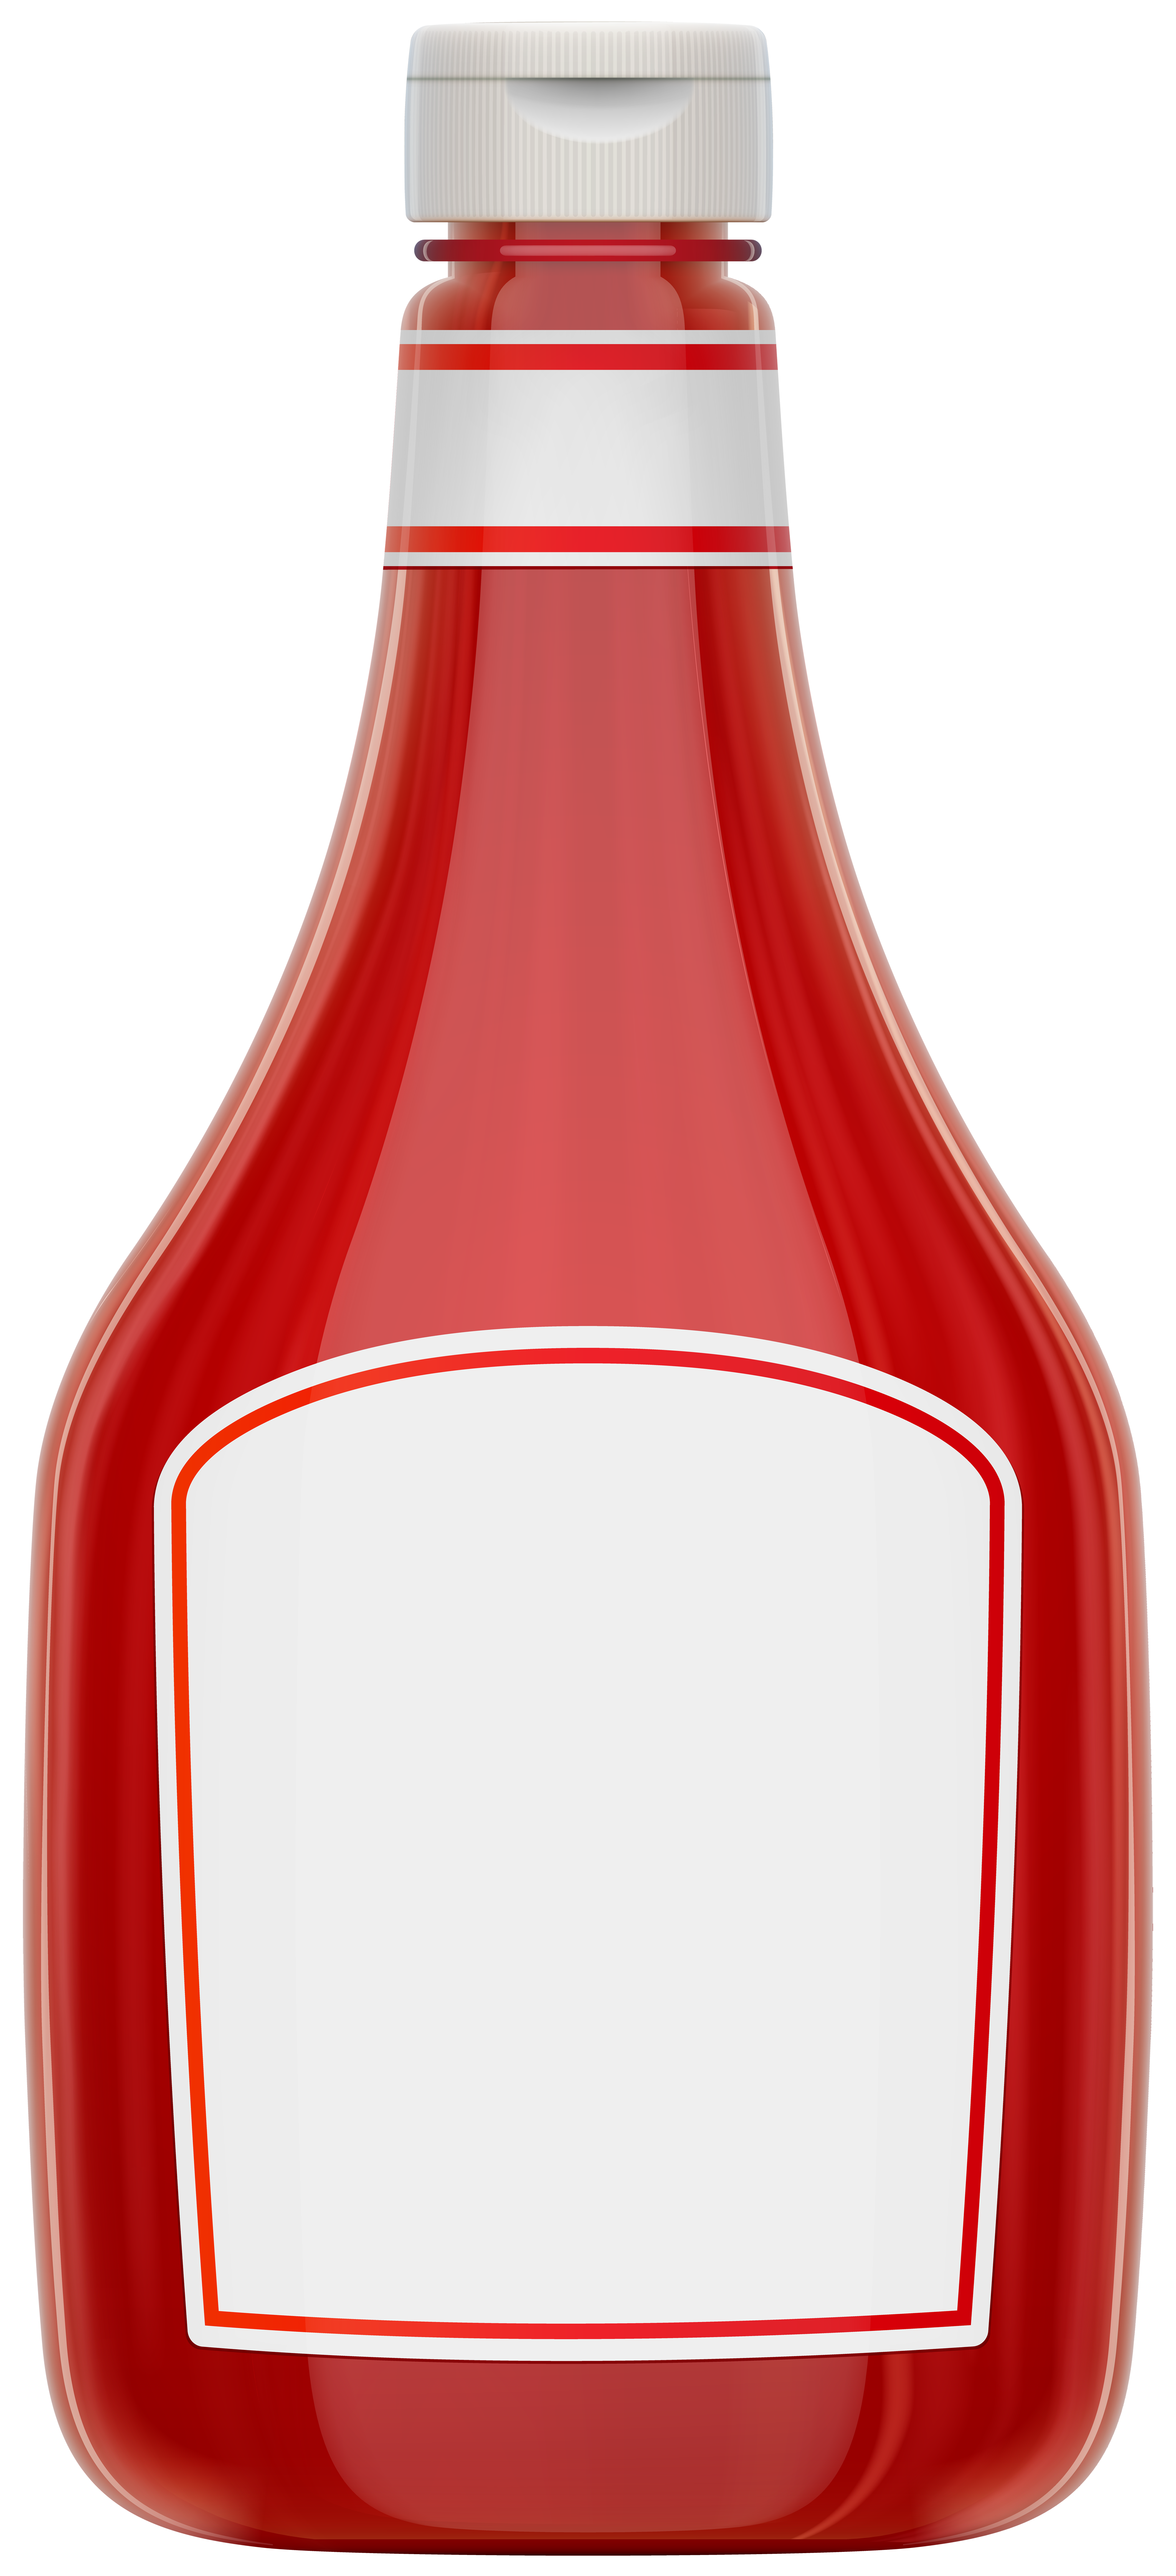 ketchup bottle png